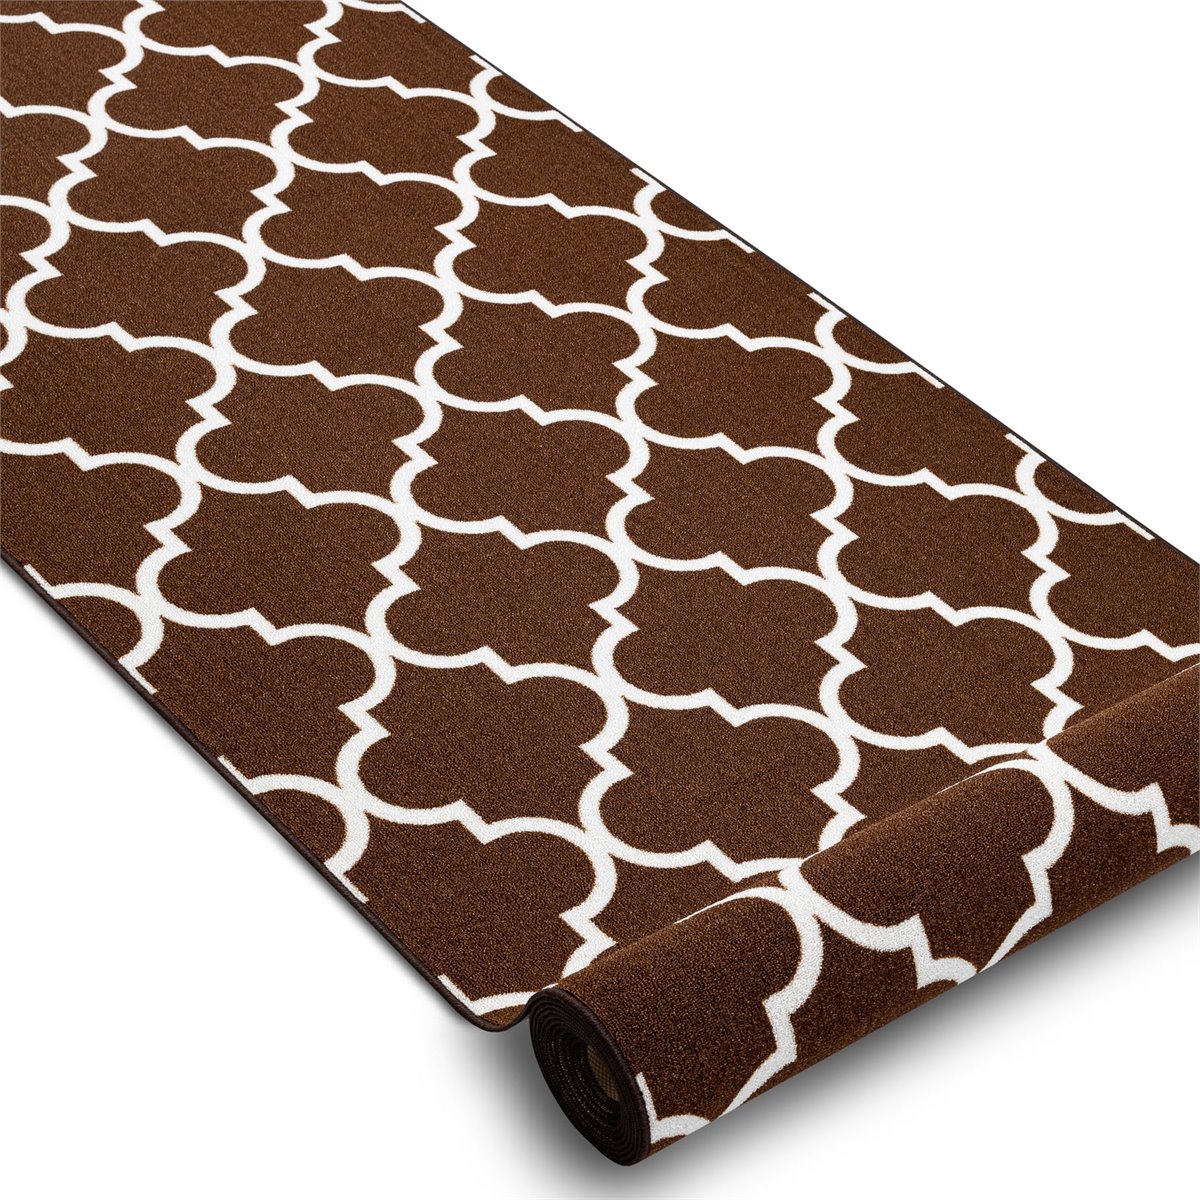 Acomoda Textil – Cortina Translucida para Ventanas 140x265 cm. (Chocolate)  - Conforama